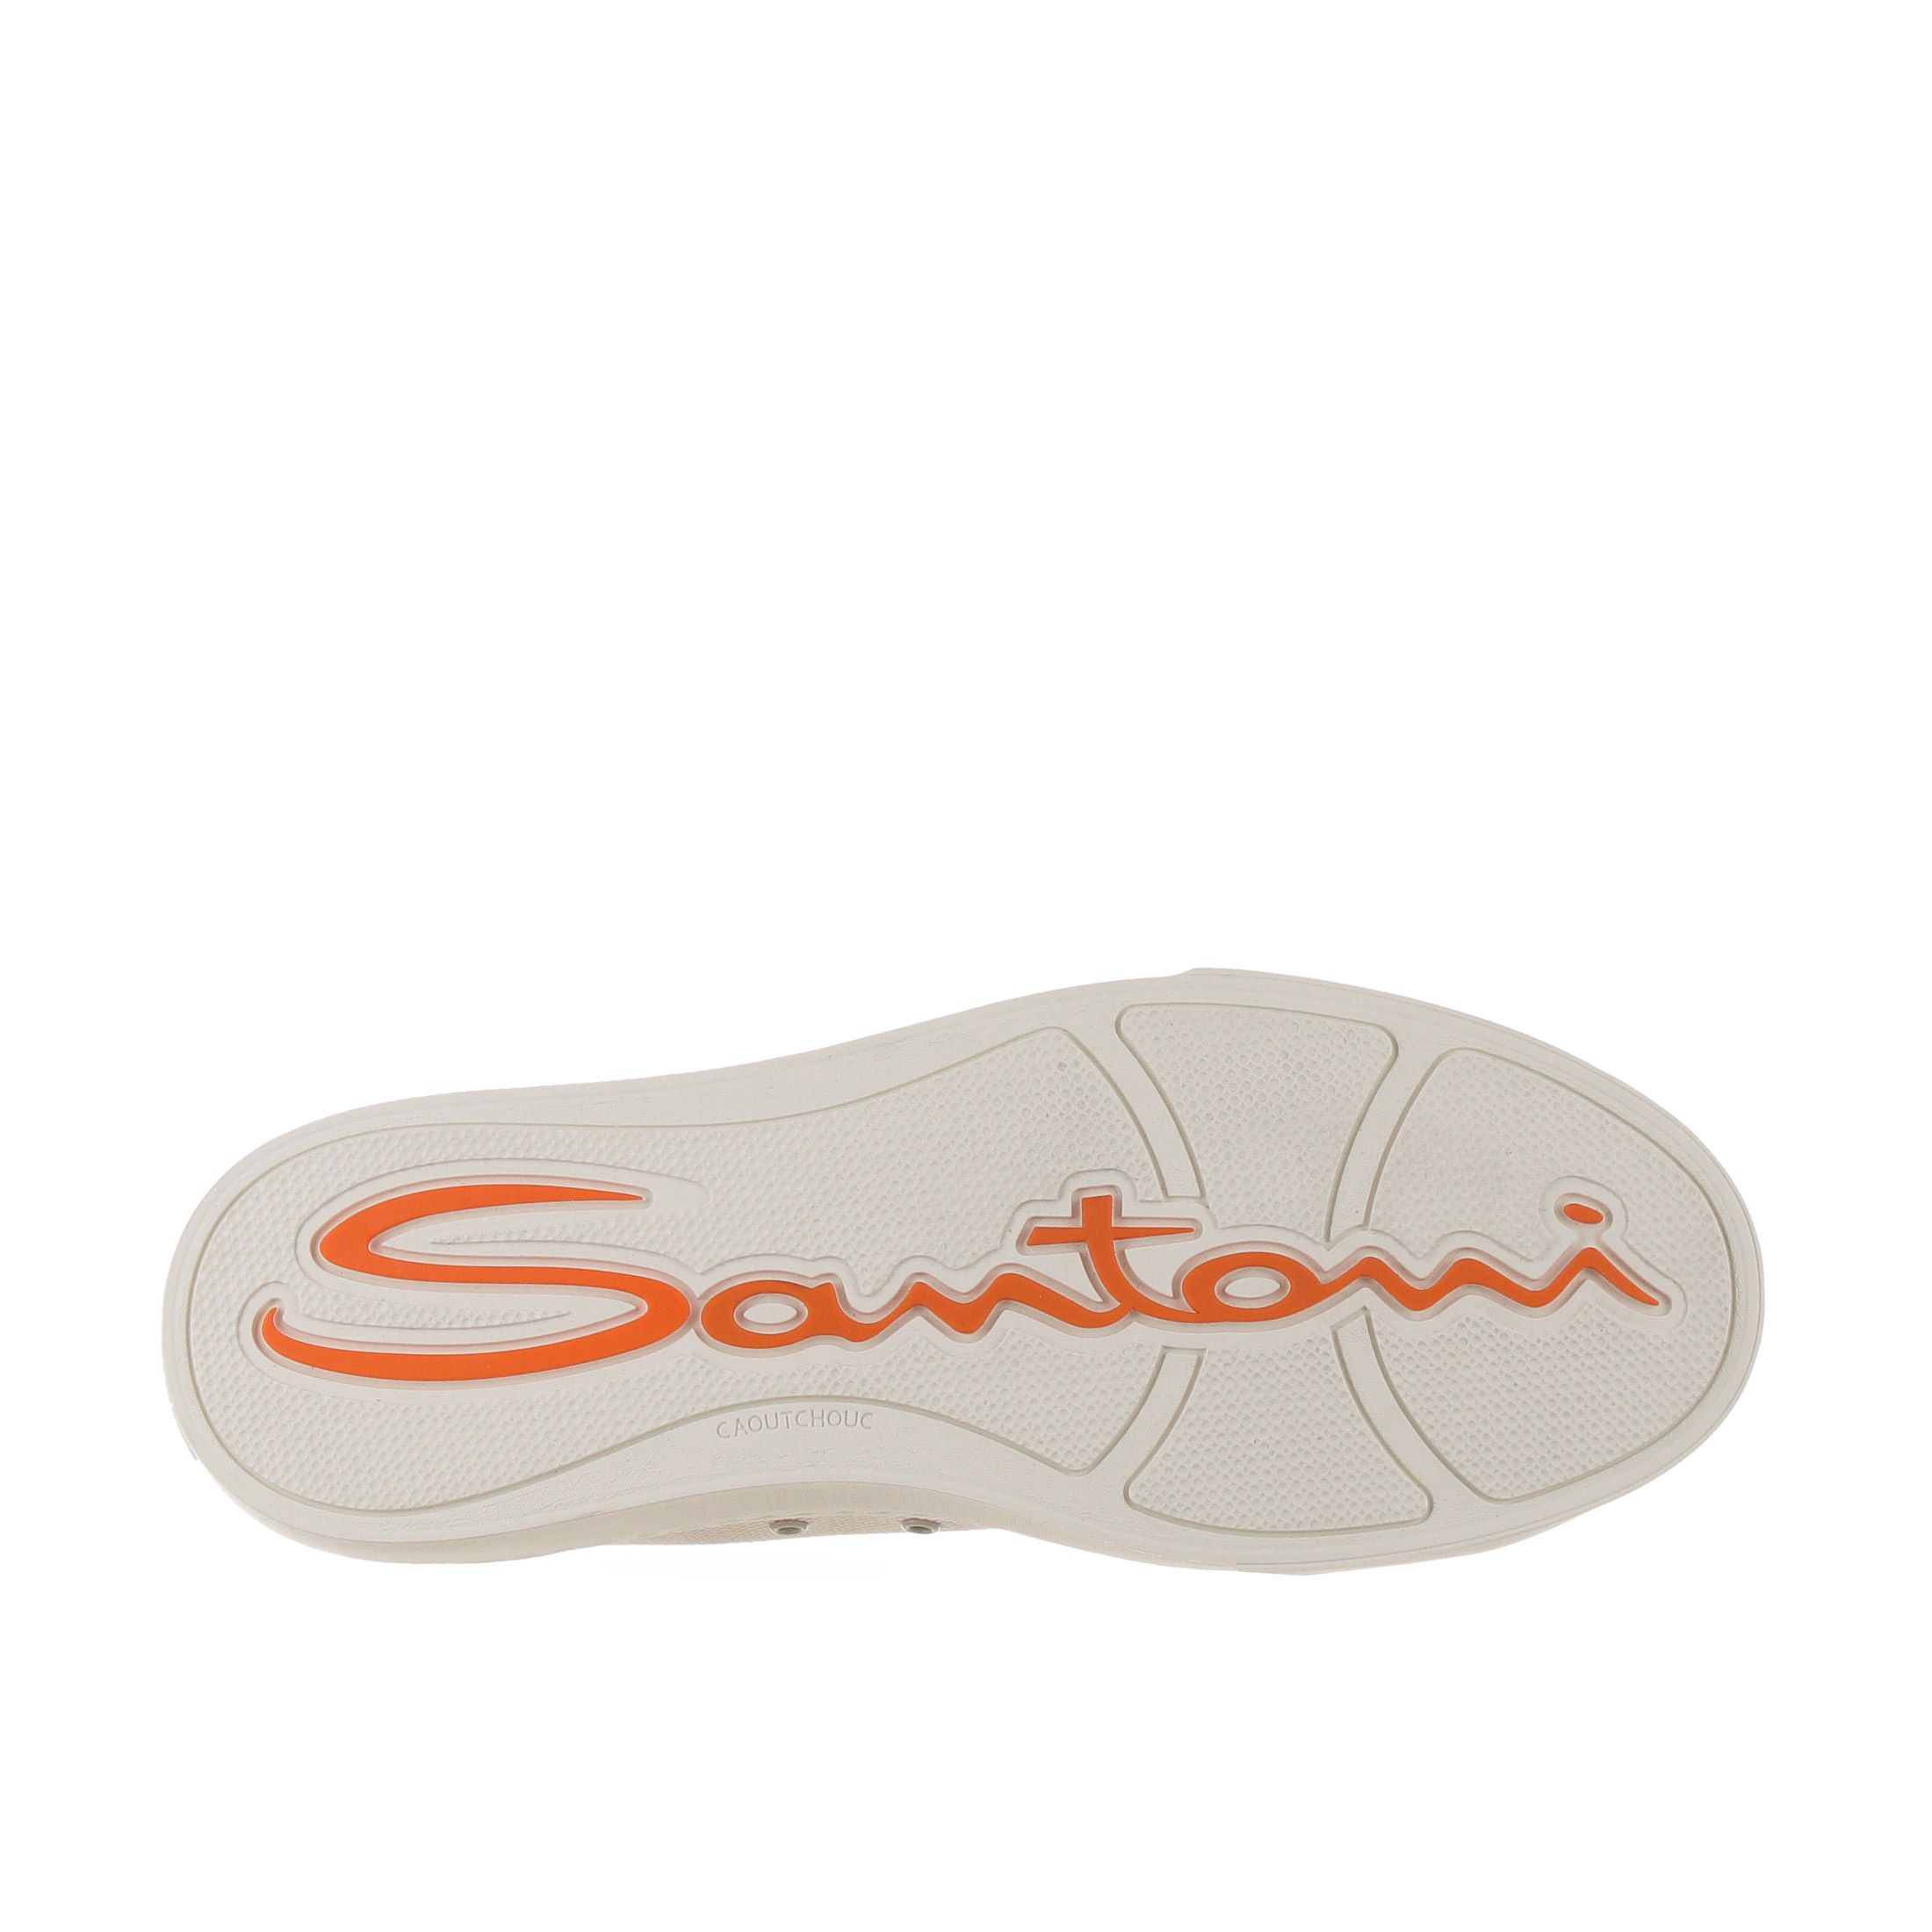 Santoni double buckle sneaker in canvas e pelle da uomo